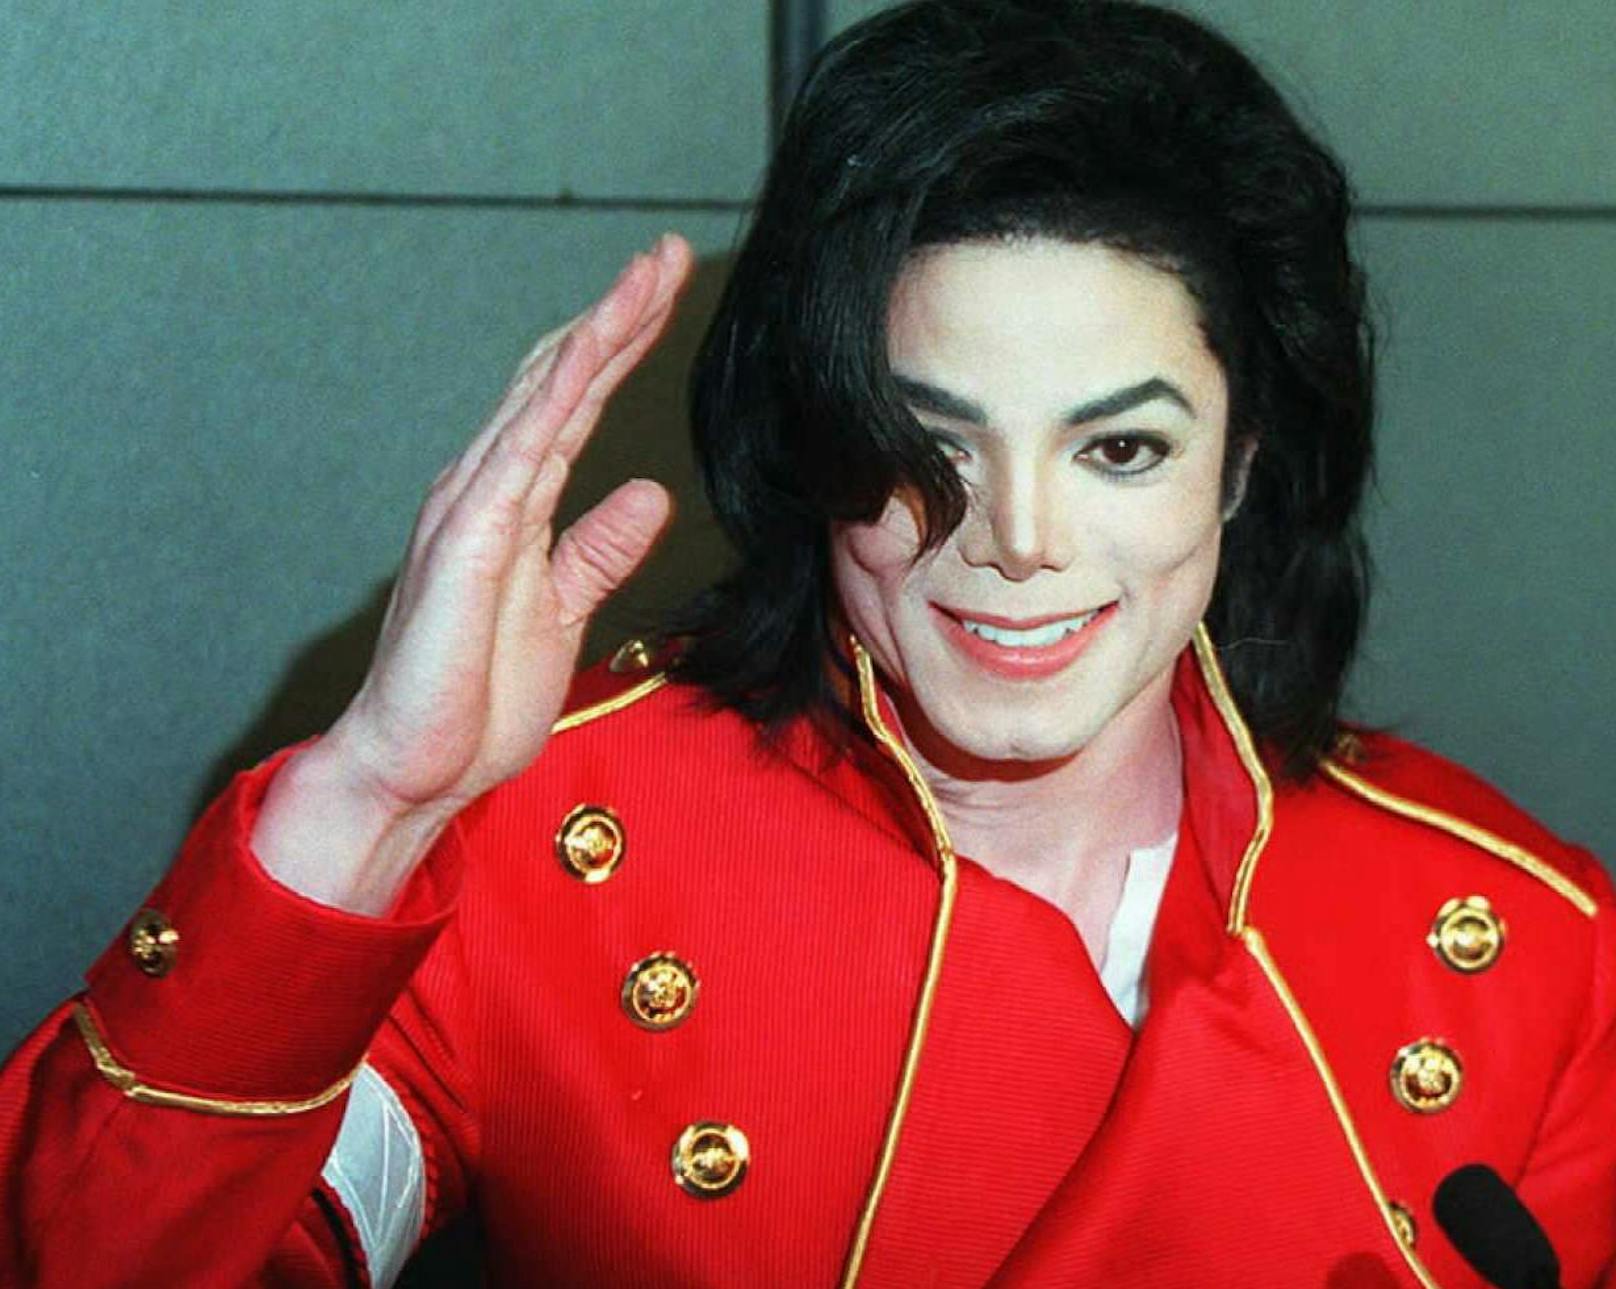 Michael Jackson war ein legendärer amerikanischer Sänger, Songwriter und Entertainer, der als "King of Pop" bekannt wurde.